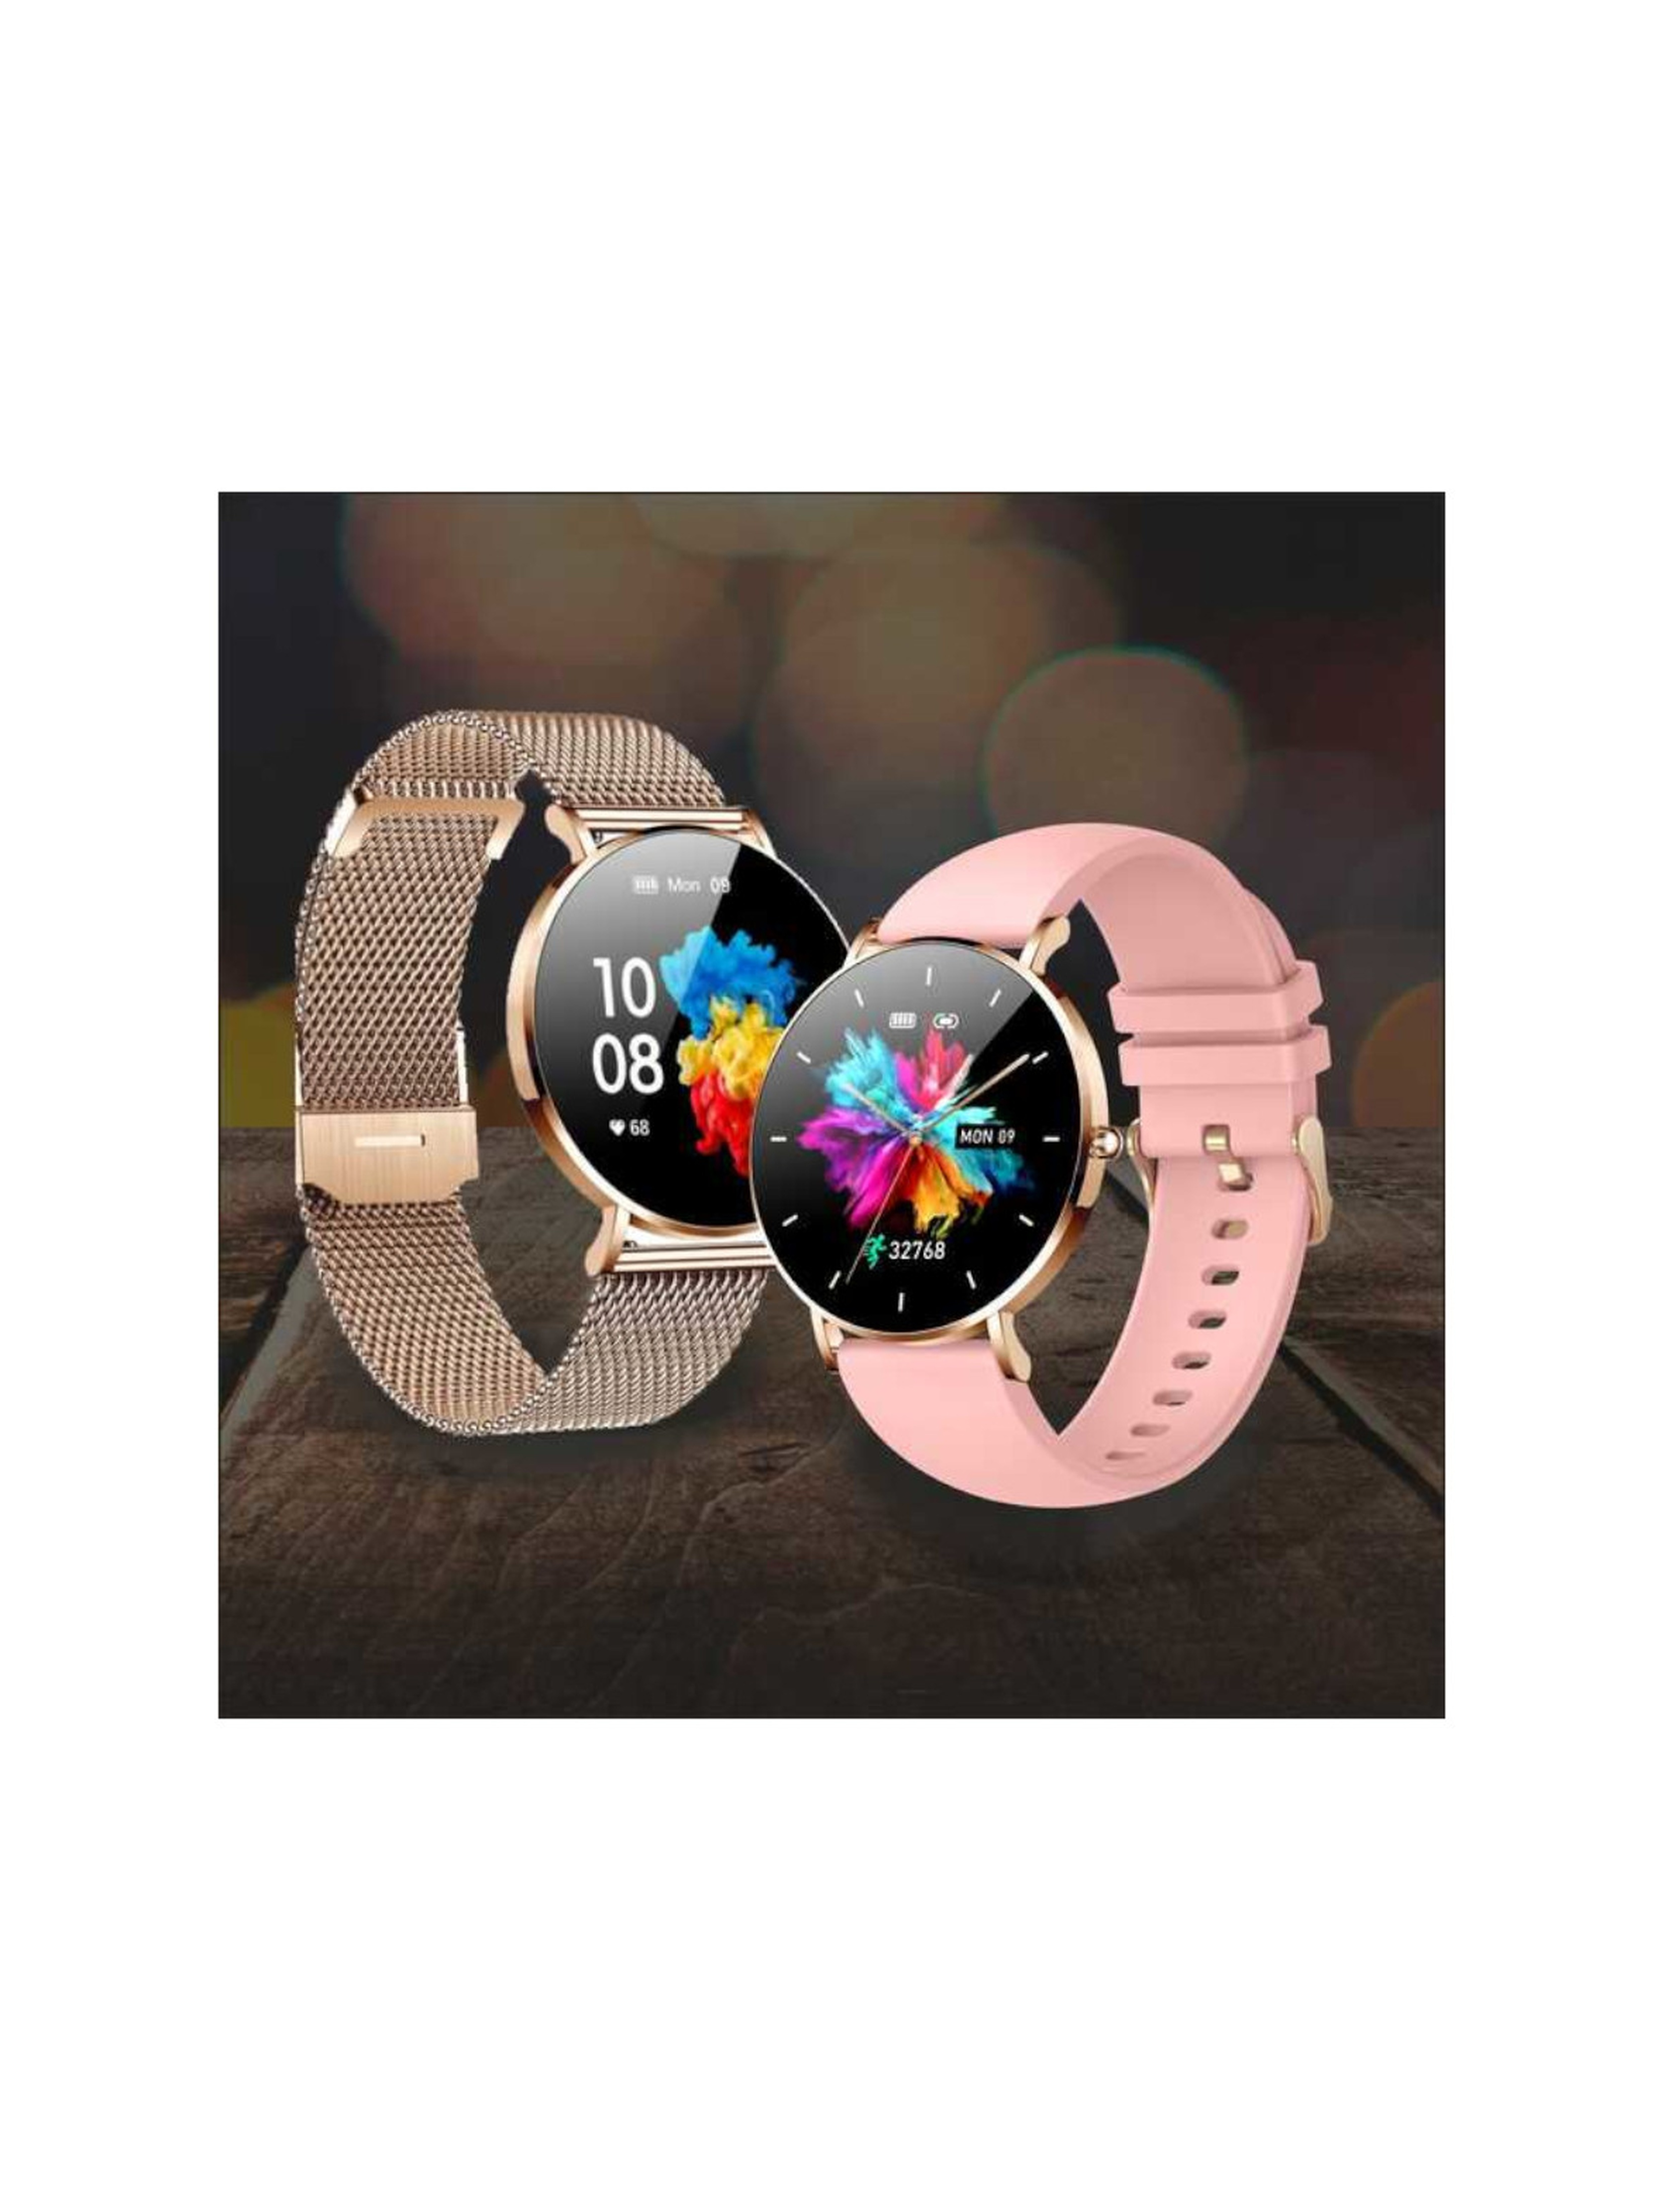 Smartwatch zegarek damski Manta Alexa - różowy + złoty pasek